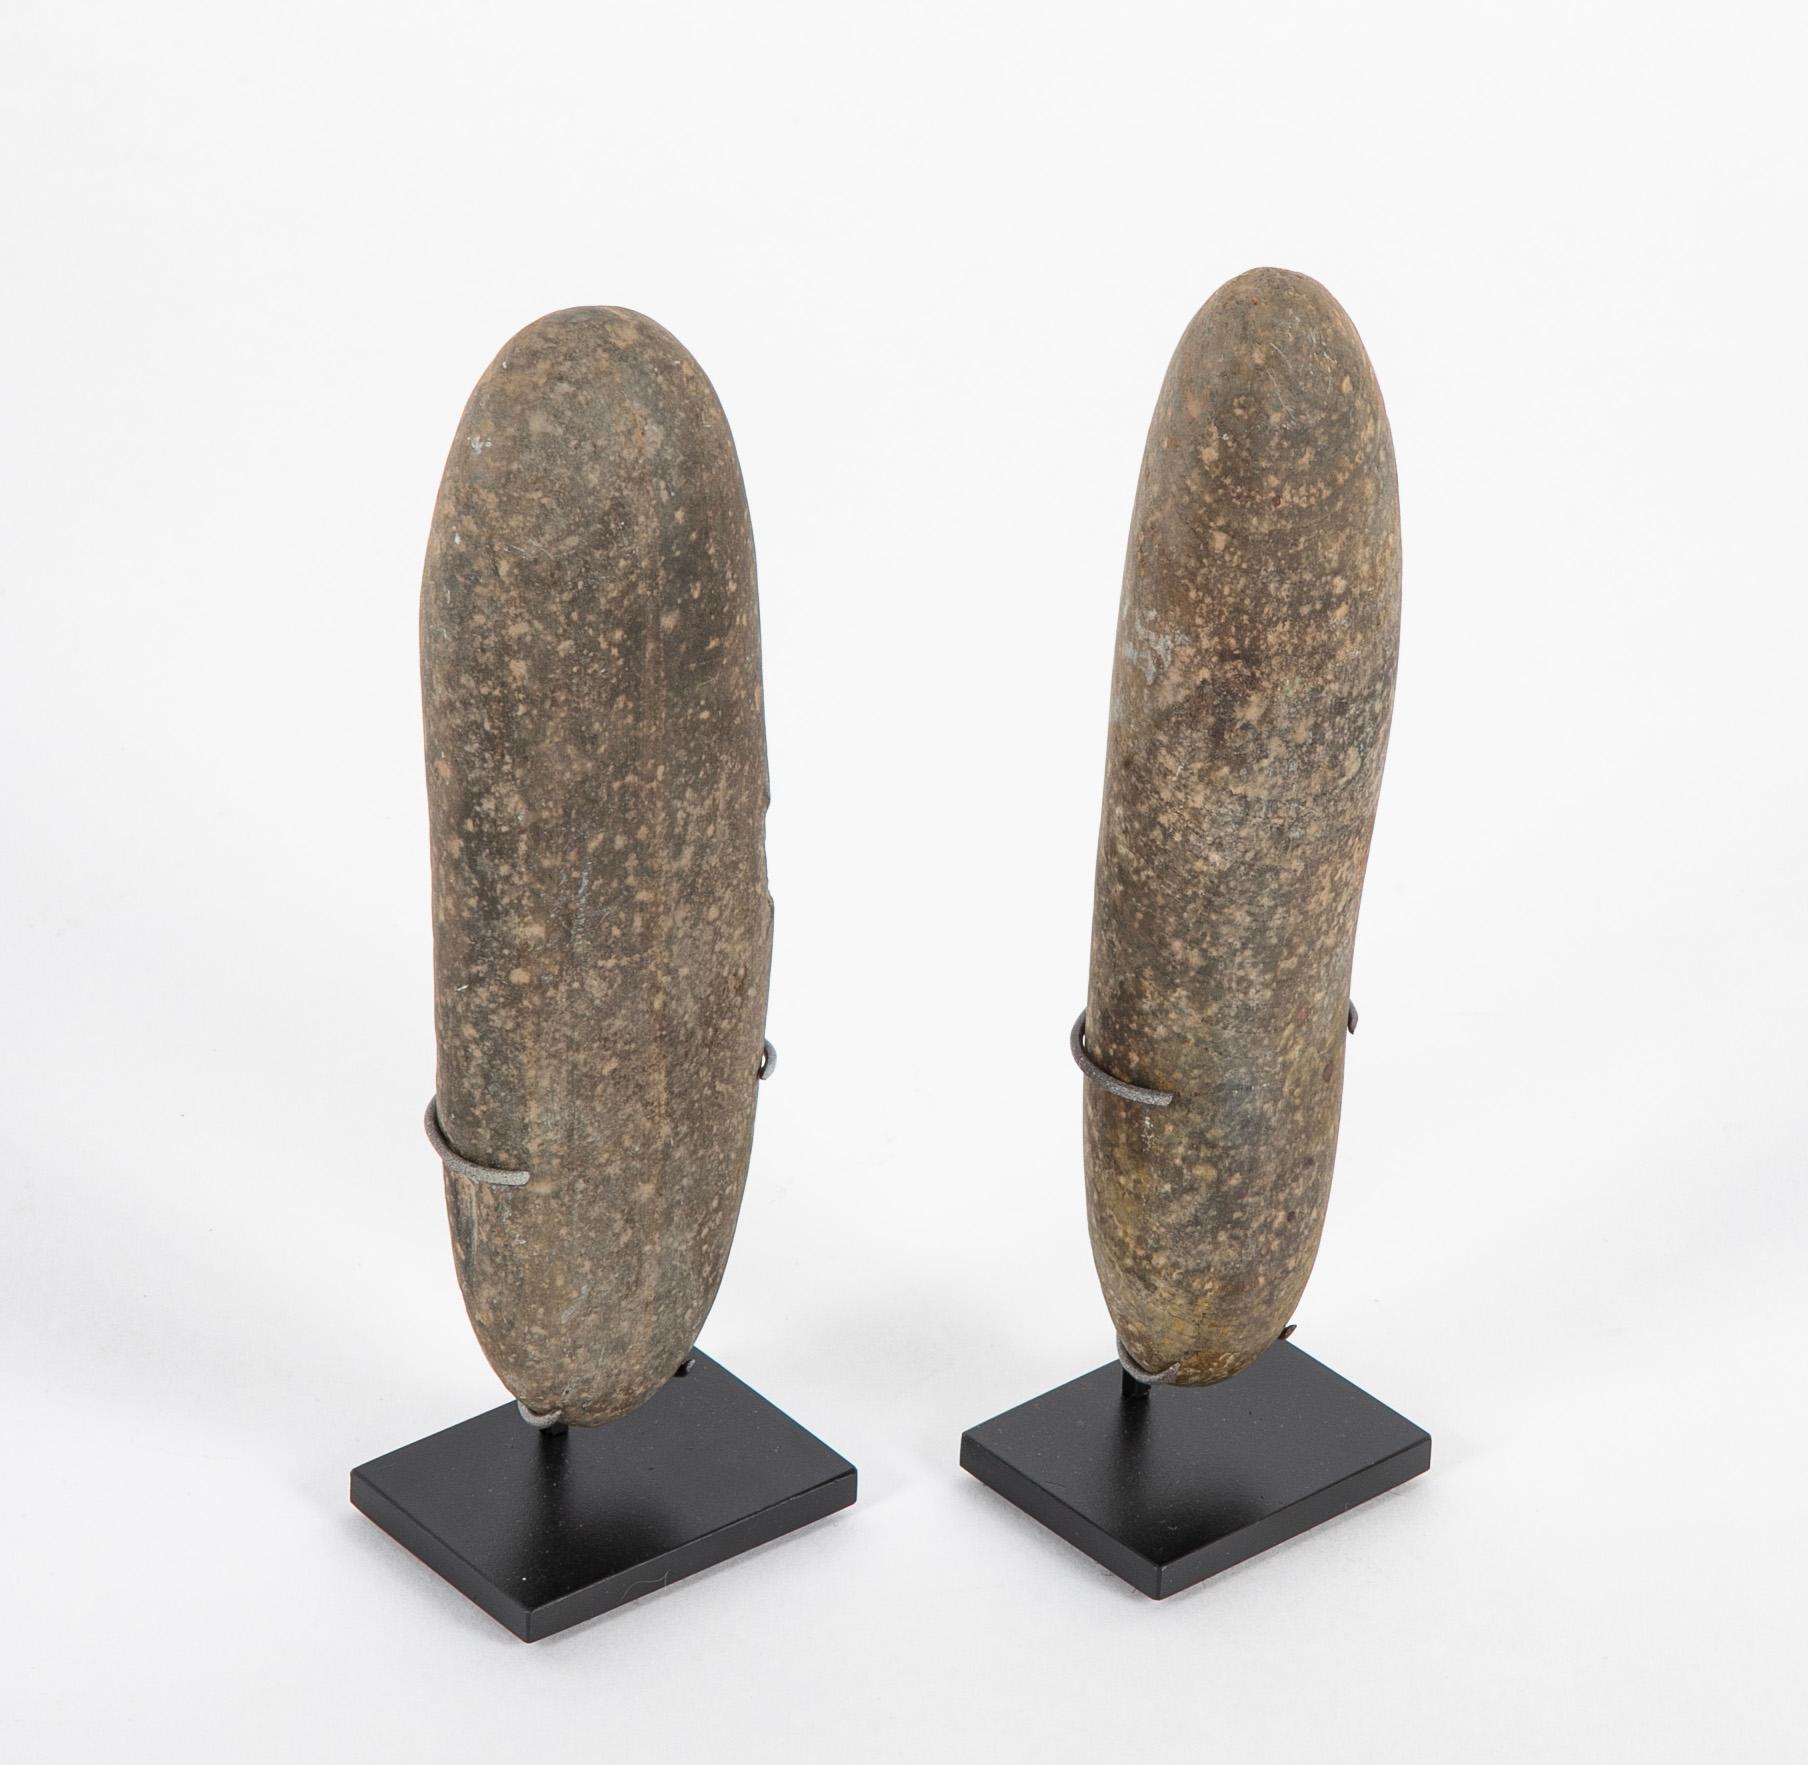 Zwei neolithische Basaltkelten auf schwarzen Stahlsockeln. In der Archäologie ist ein Kelt ein langes, dünnes, prähistorisches Werkzeug aus Stein oder Bronze, das als Schaufel, Hacke, Hammer oder Axt verwendet wird. Es sind wunderschöne